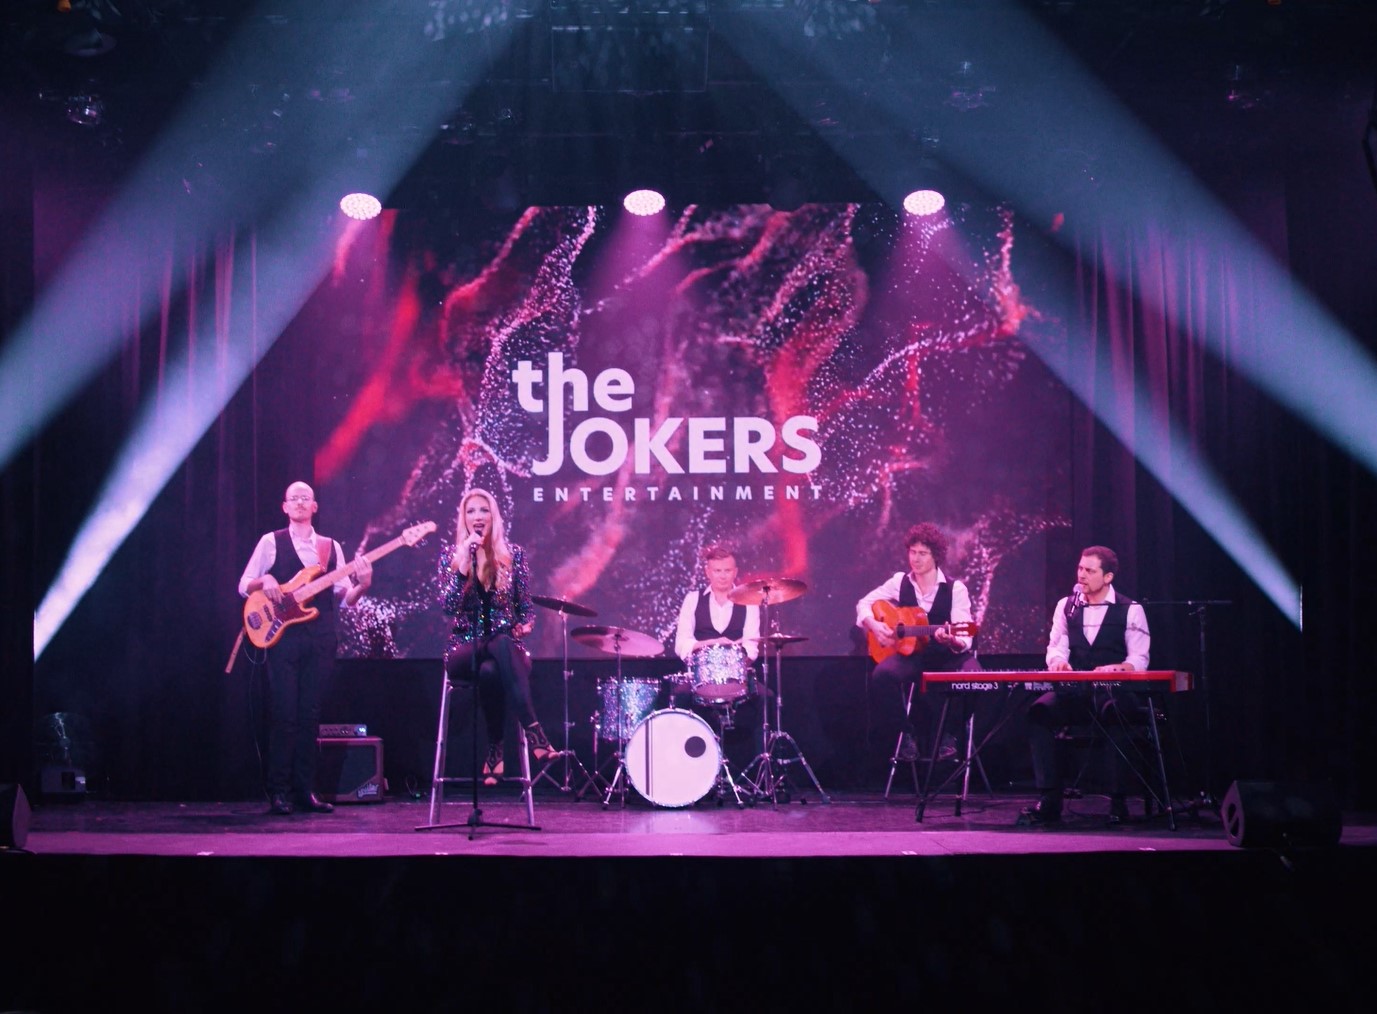 Quintett Besetzung Liveband The Jokers Entertainment